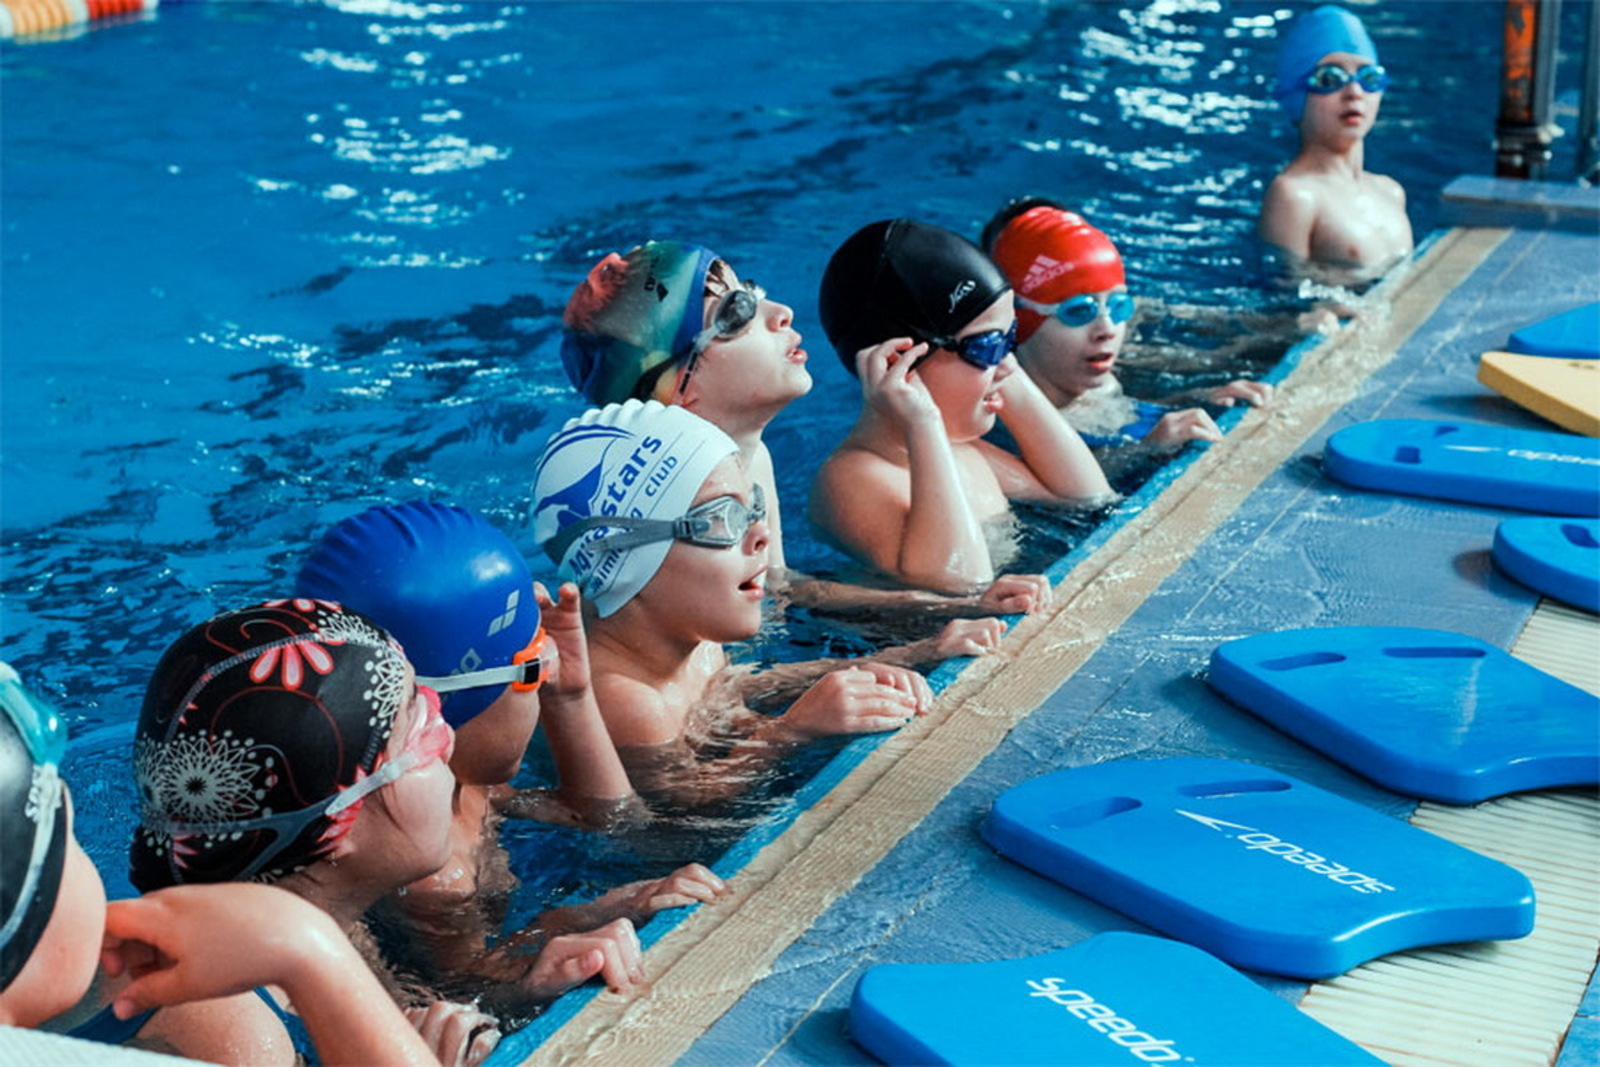 Занятие обучение плаванию. Дети в бассейне. Плавание в бассейне дети. Занятия в бассейне для детей. Дети плавают в бассейне.